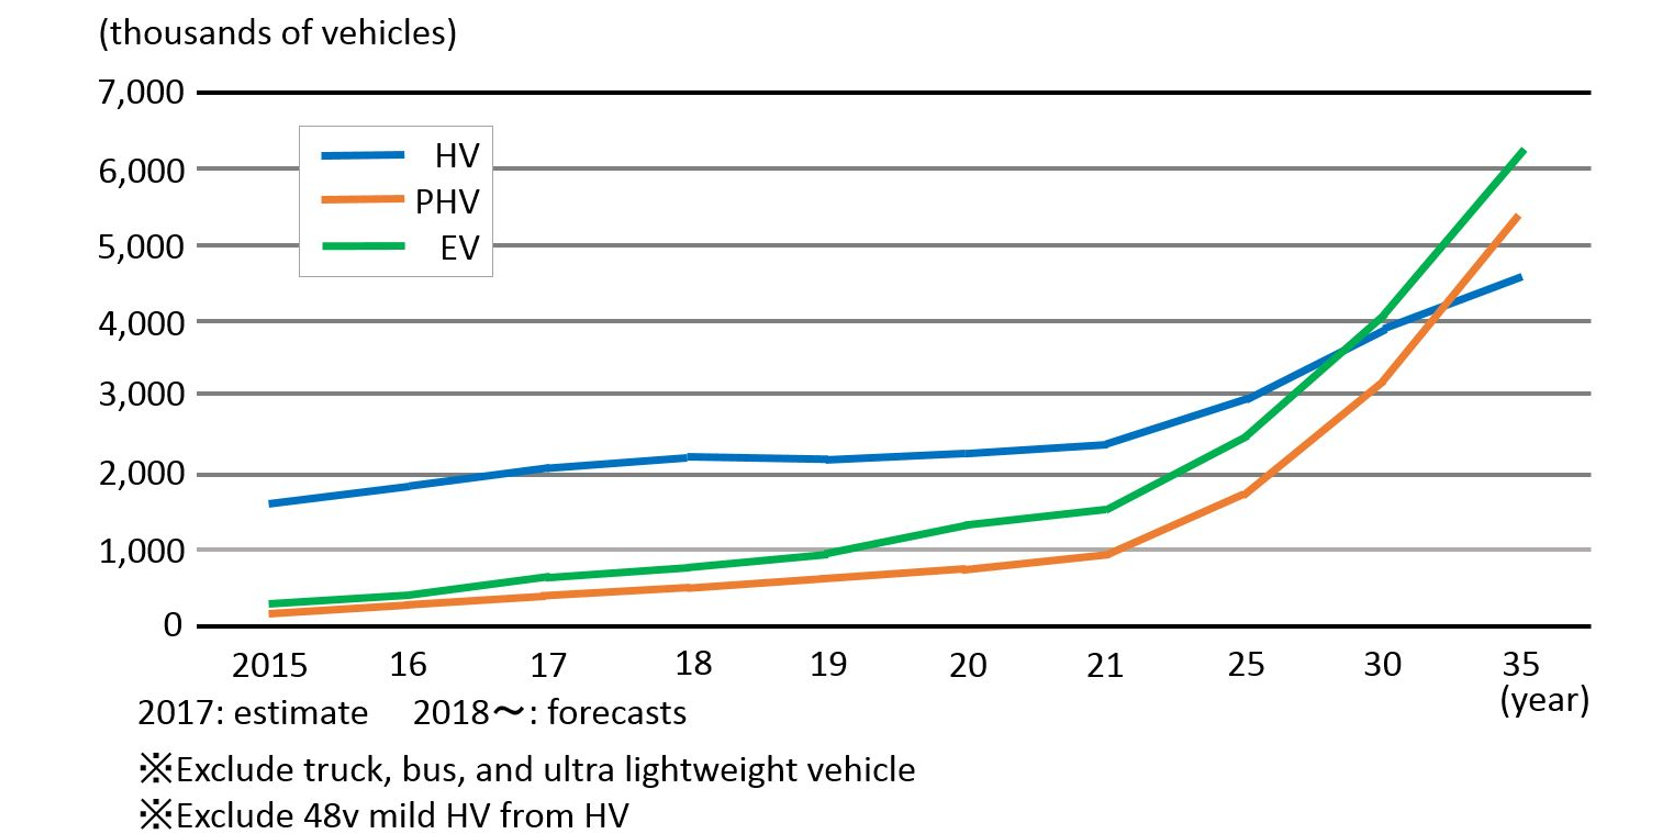 progresion-ventas-coches-electricos-hibridos-enchufables-hibridos-mercado-mundial-china-europa-estados-unidos-japon